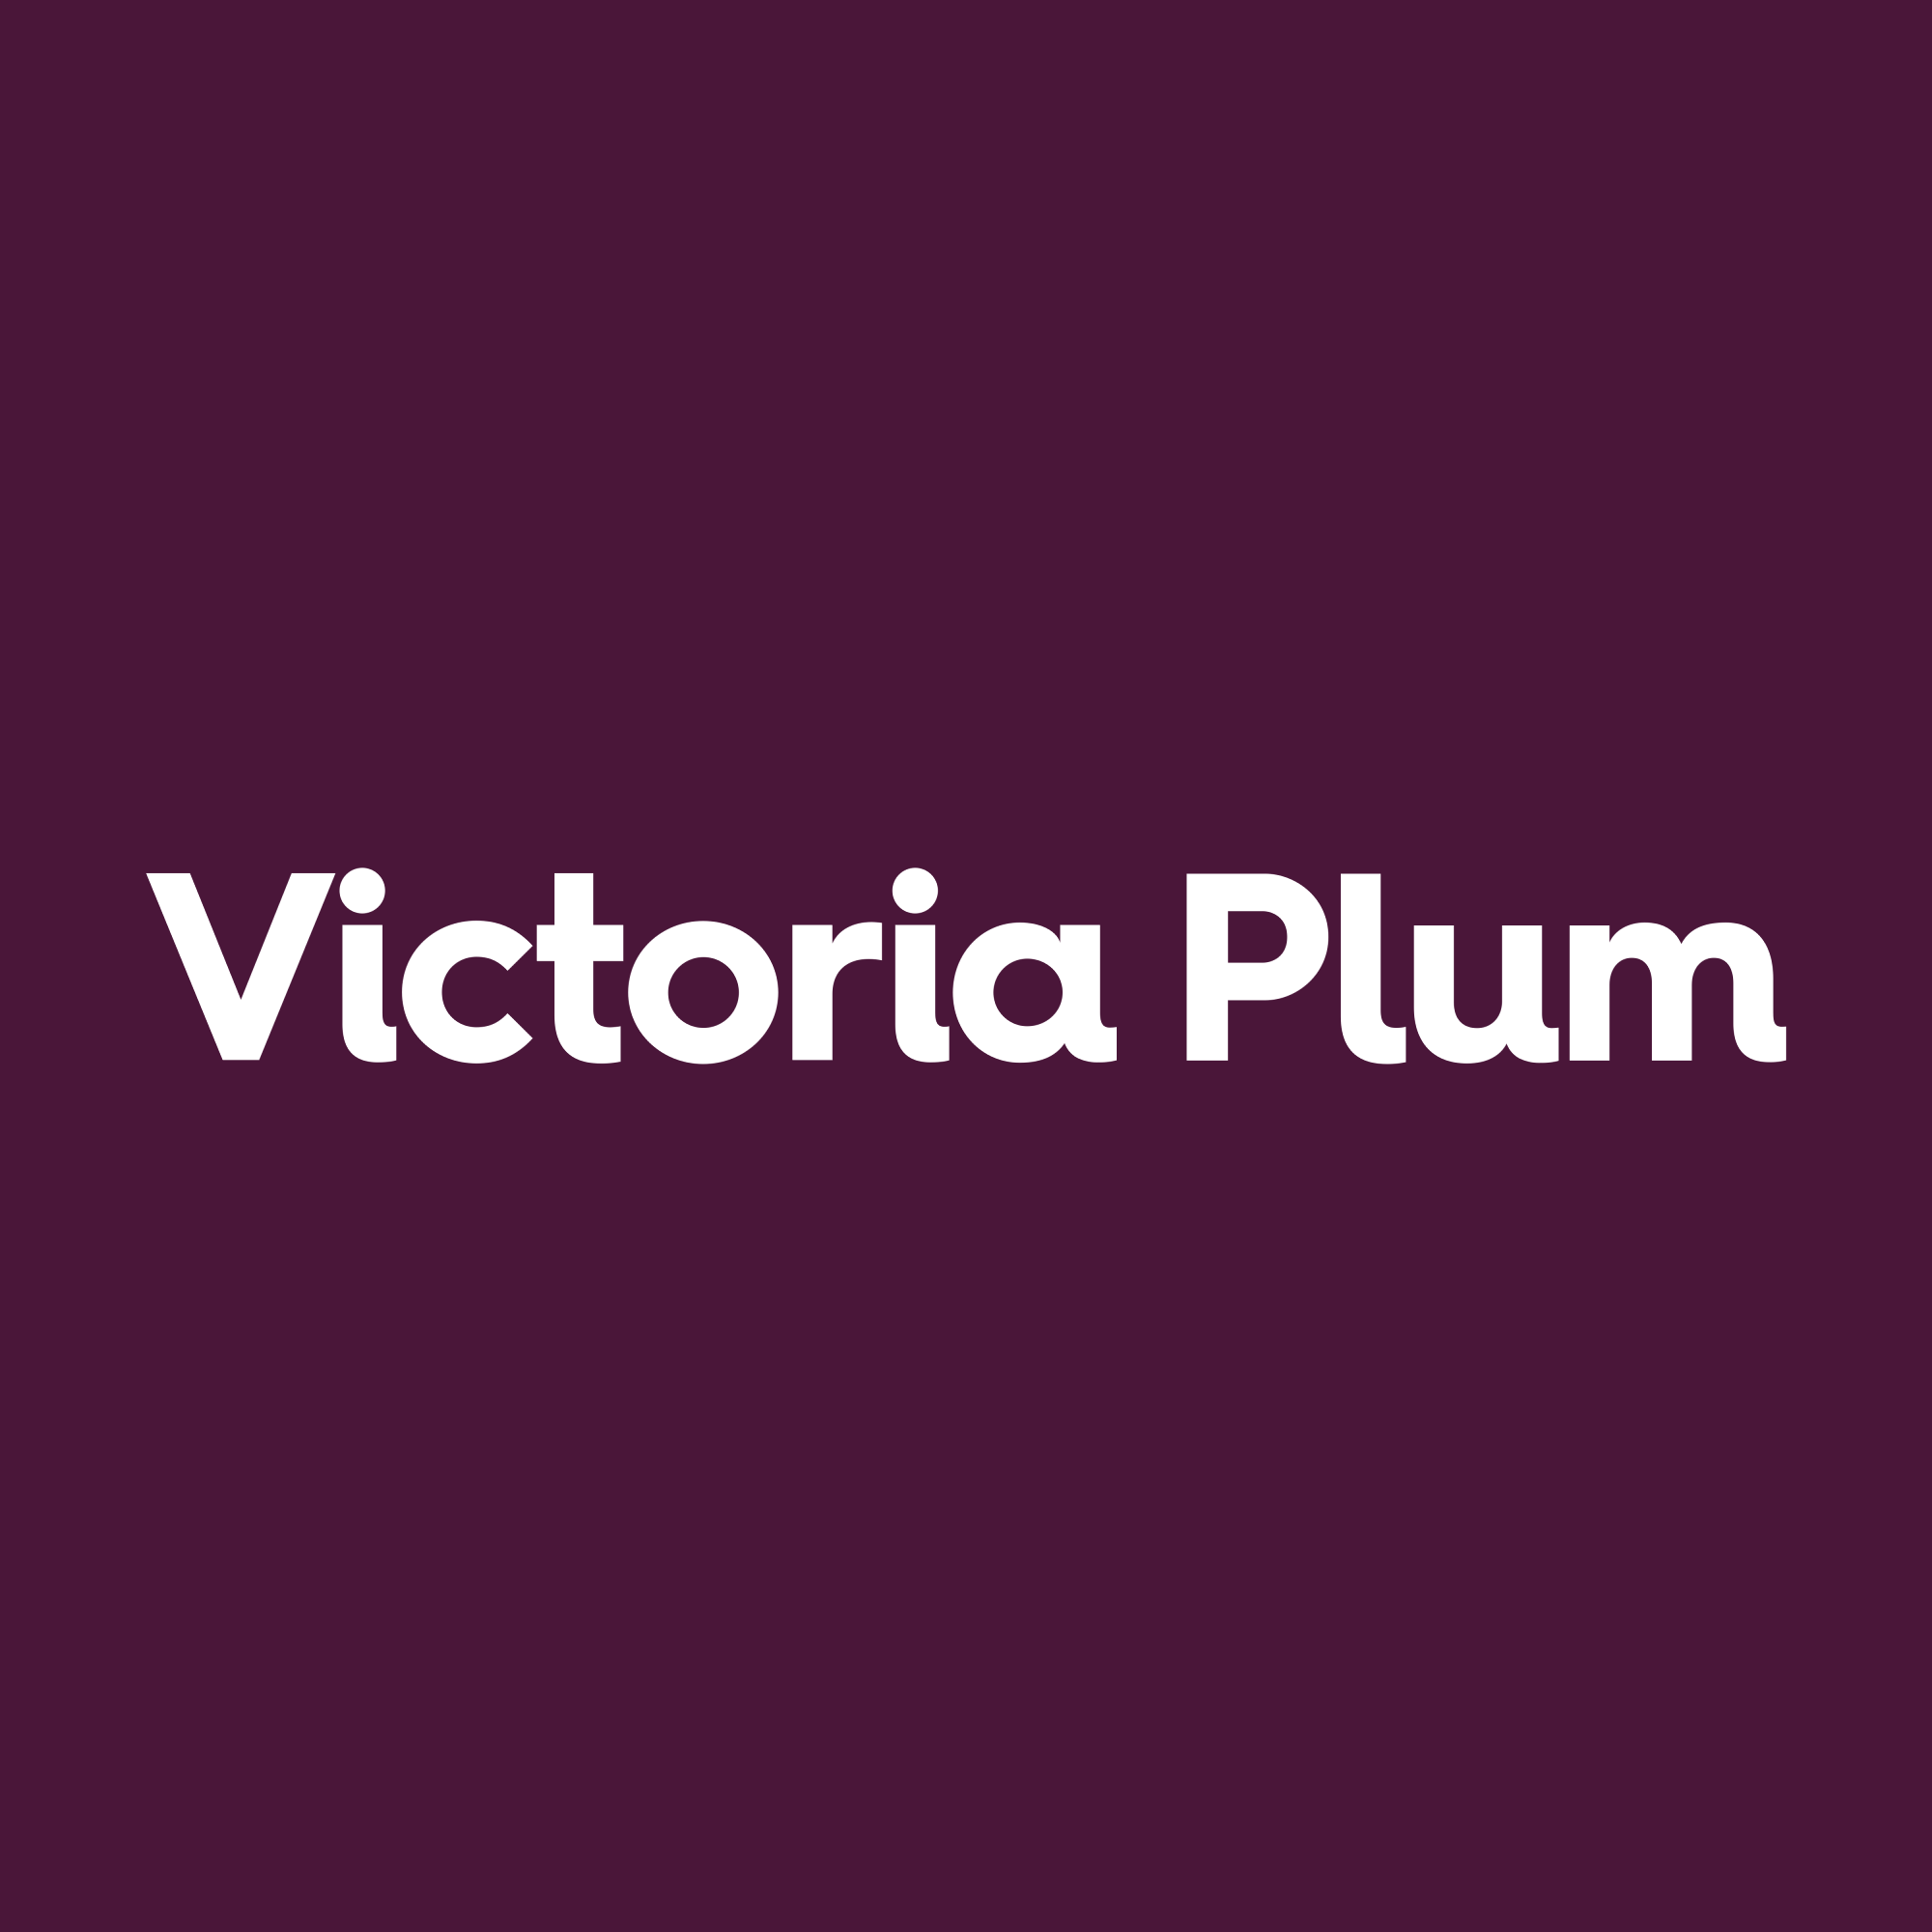 Victoria Plum Coupons & Promo Codes